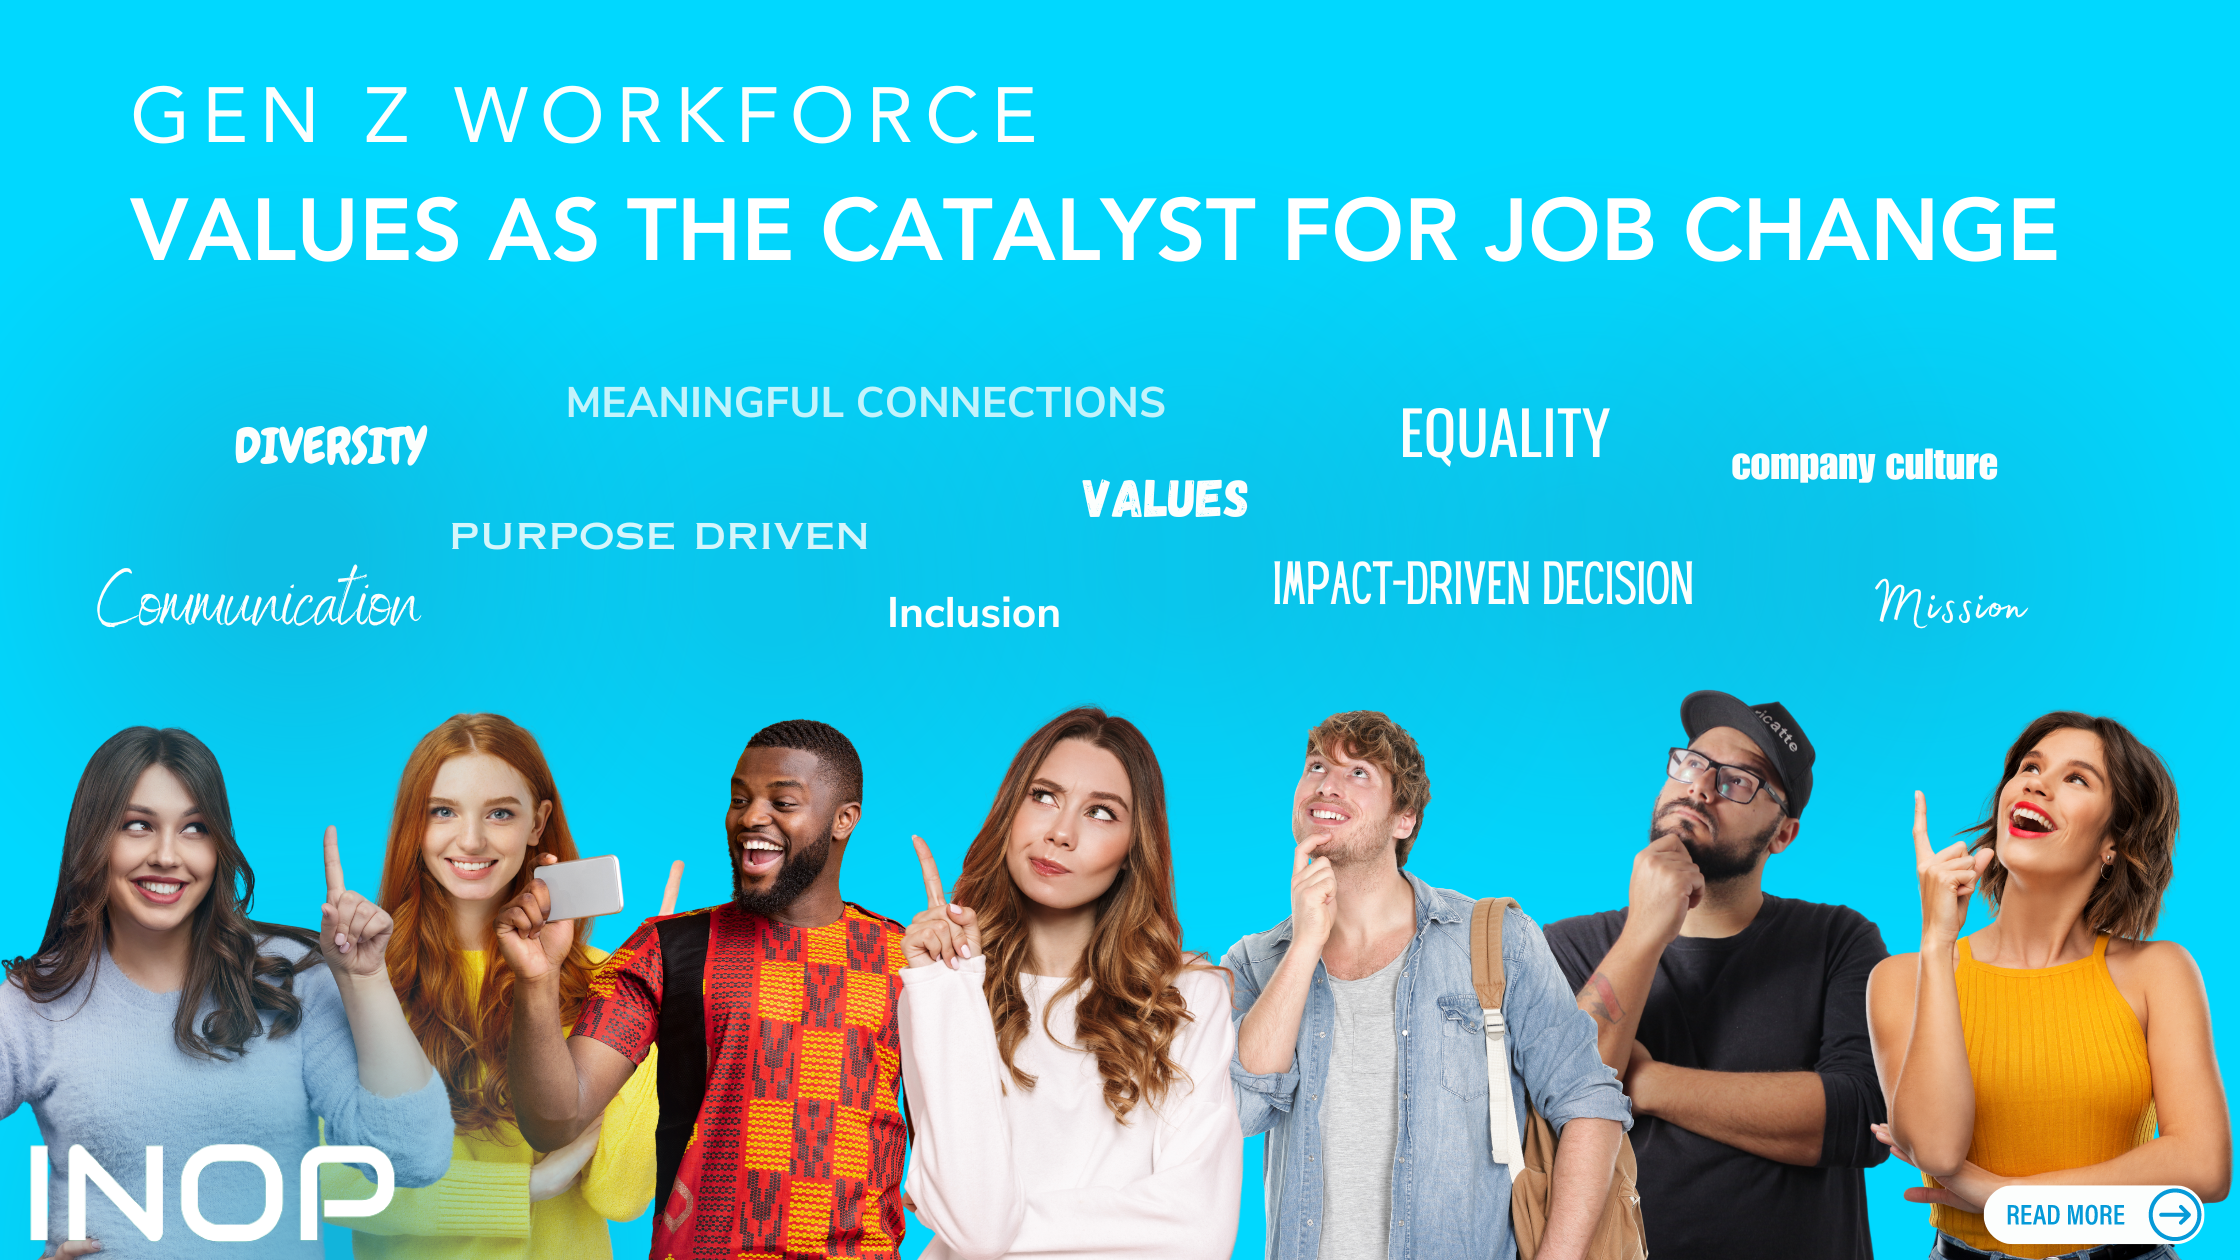 Gen Z workforce values as a catalyst